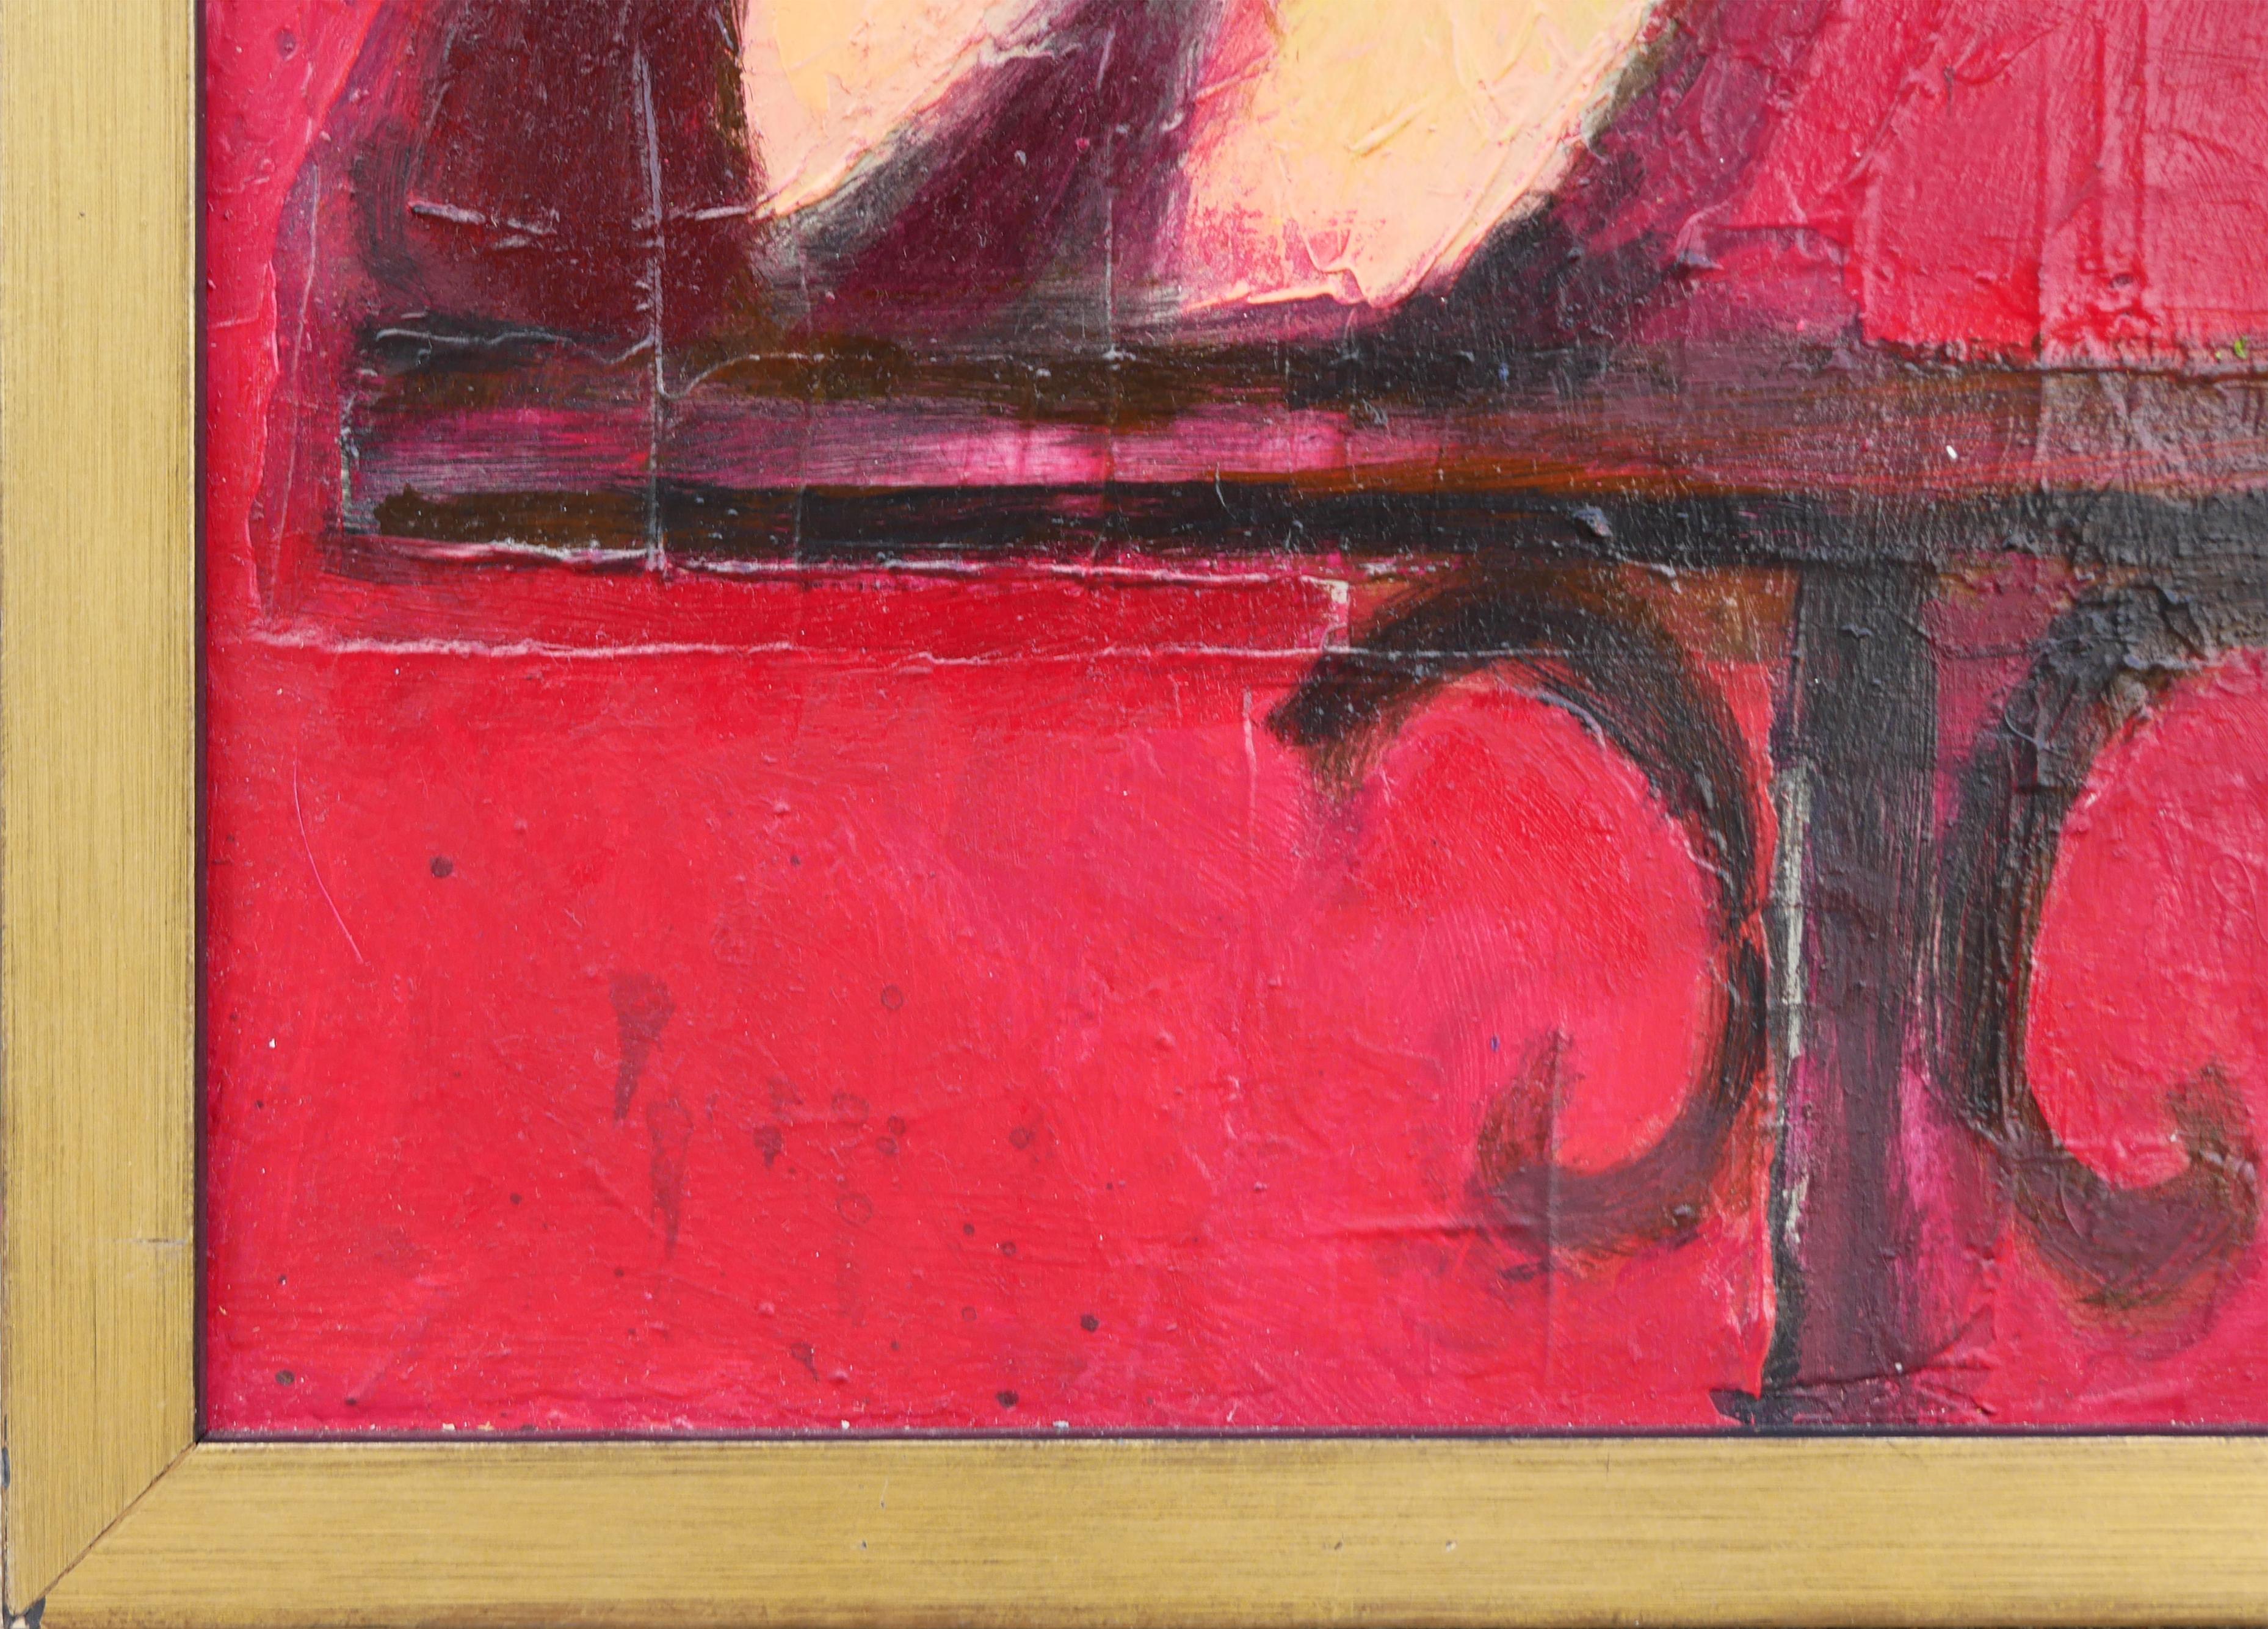 Portrait abstrait et figuratif aux tons rouges de l'artiste David Adickes, de Houston, au Texas. Le tableau représente une femme fumant et buvant du vin près d'une petite table d'appoint. Non signée. Encadré dans un cadre en bois doré.

Dimensions